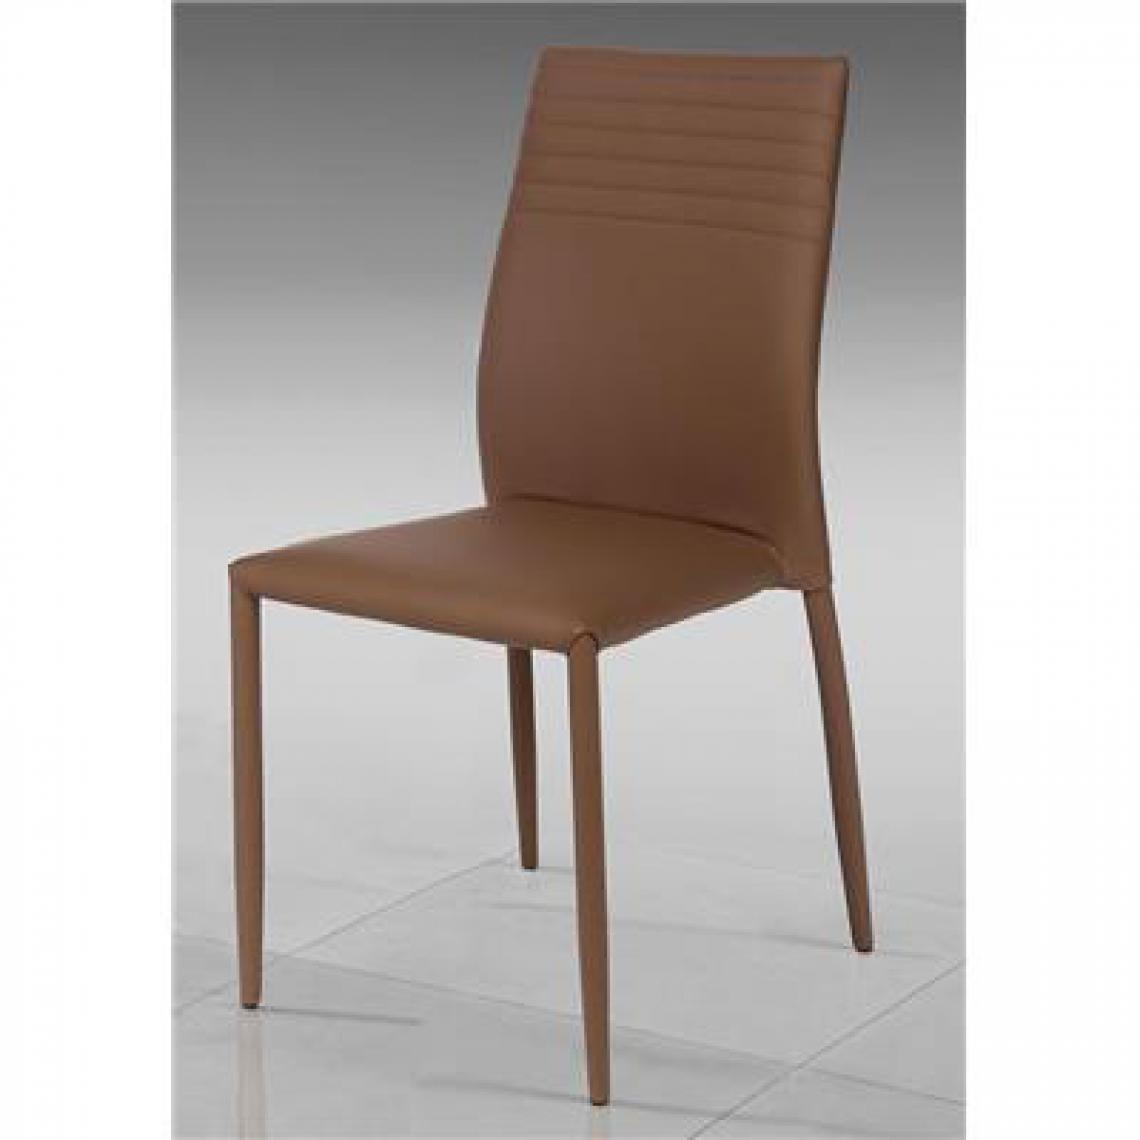 Kasalinea - Chaise design en PU de salle à manger CASSIE (Lot de 6), 4 coloris-L 42,5 x P 51 x H 90 cm- Marron - Chaises